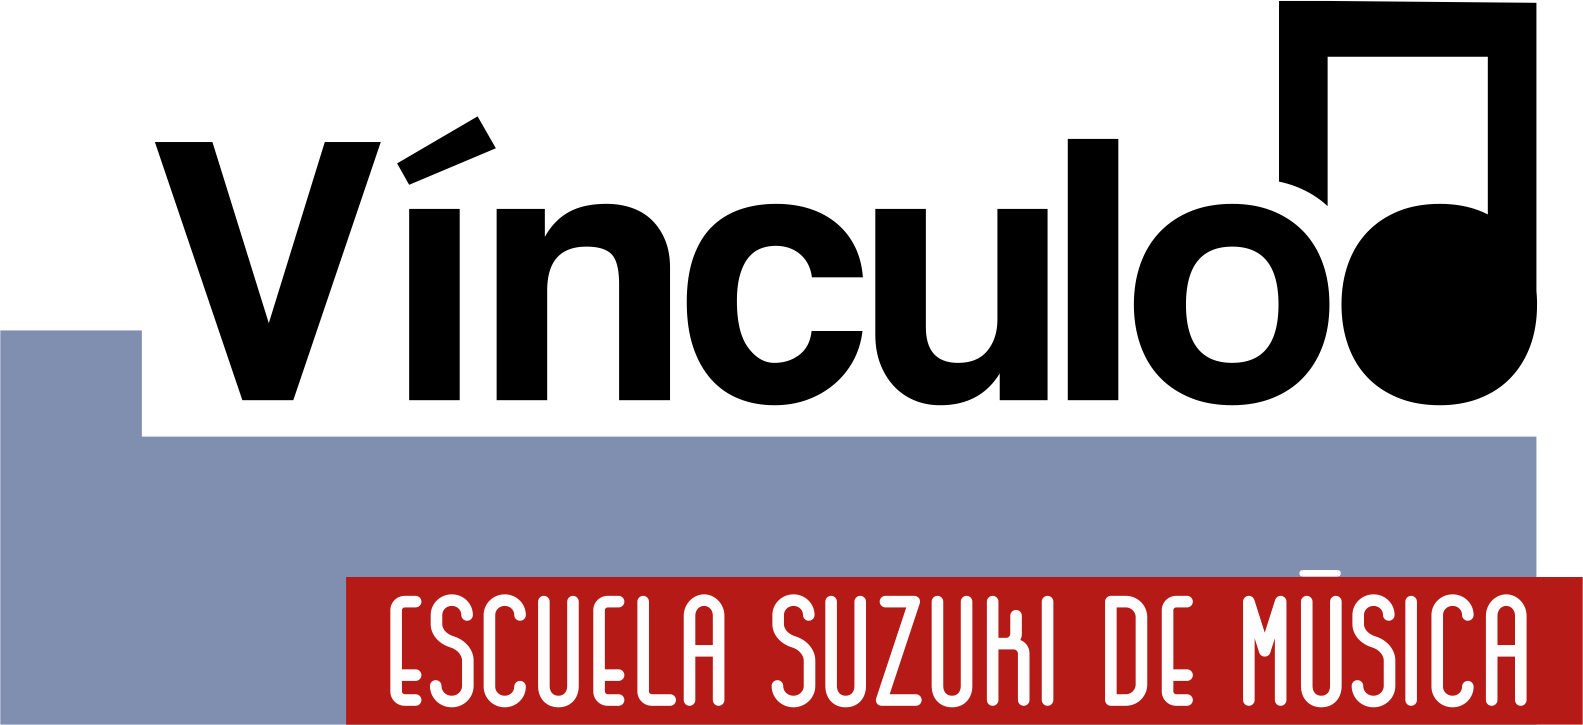 Vínculo Escuela Suzuki de Música